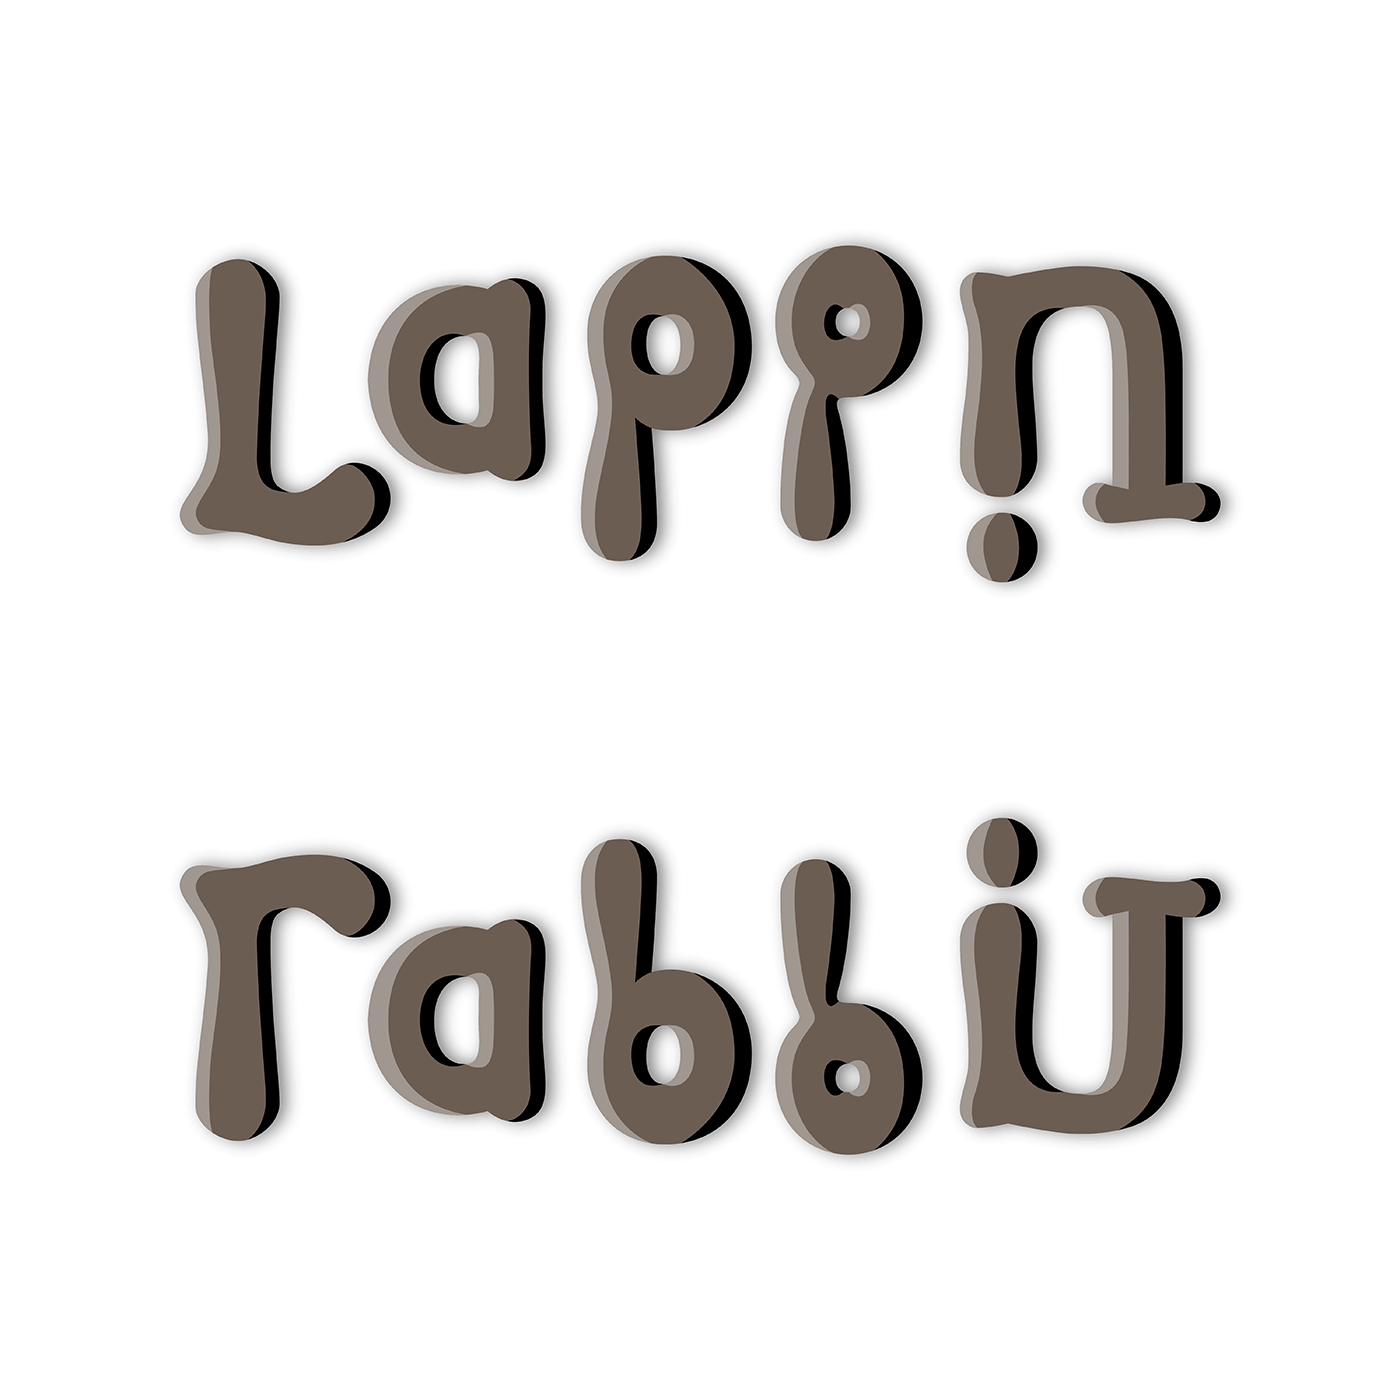 ambigramme Lapin / Rabbit